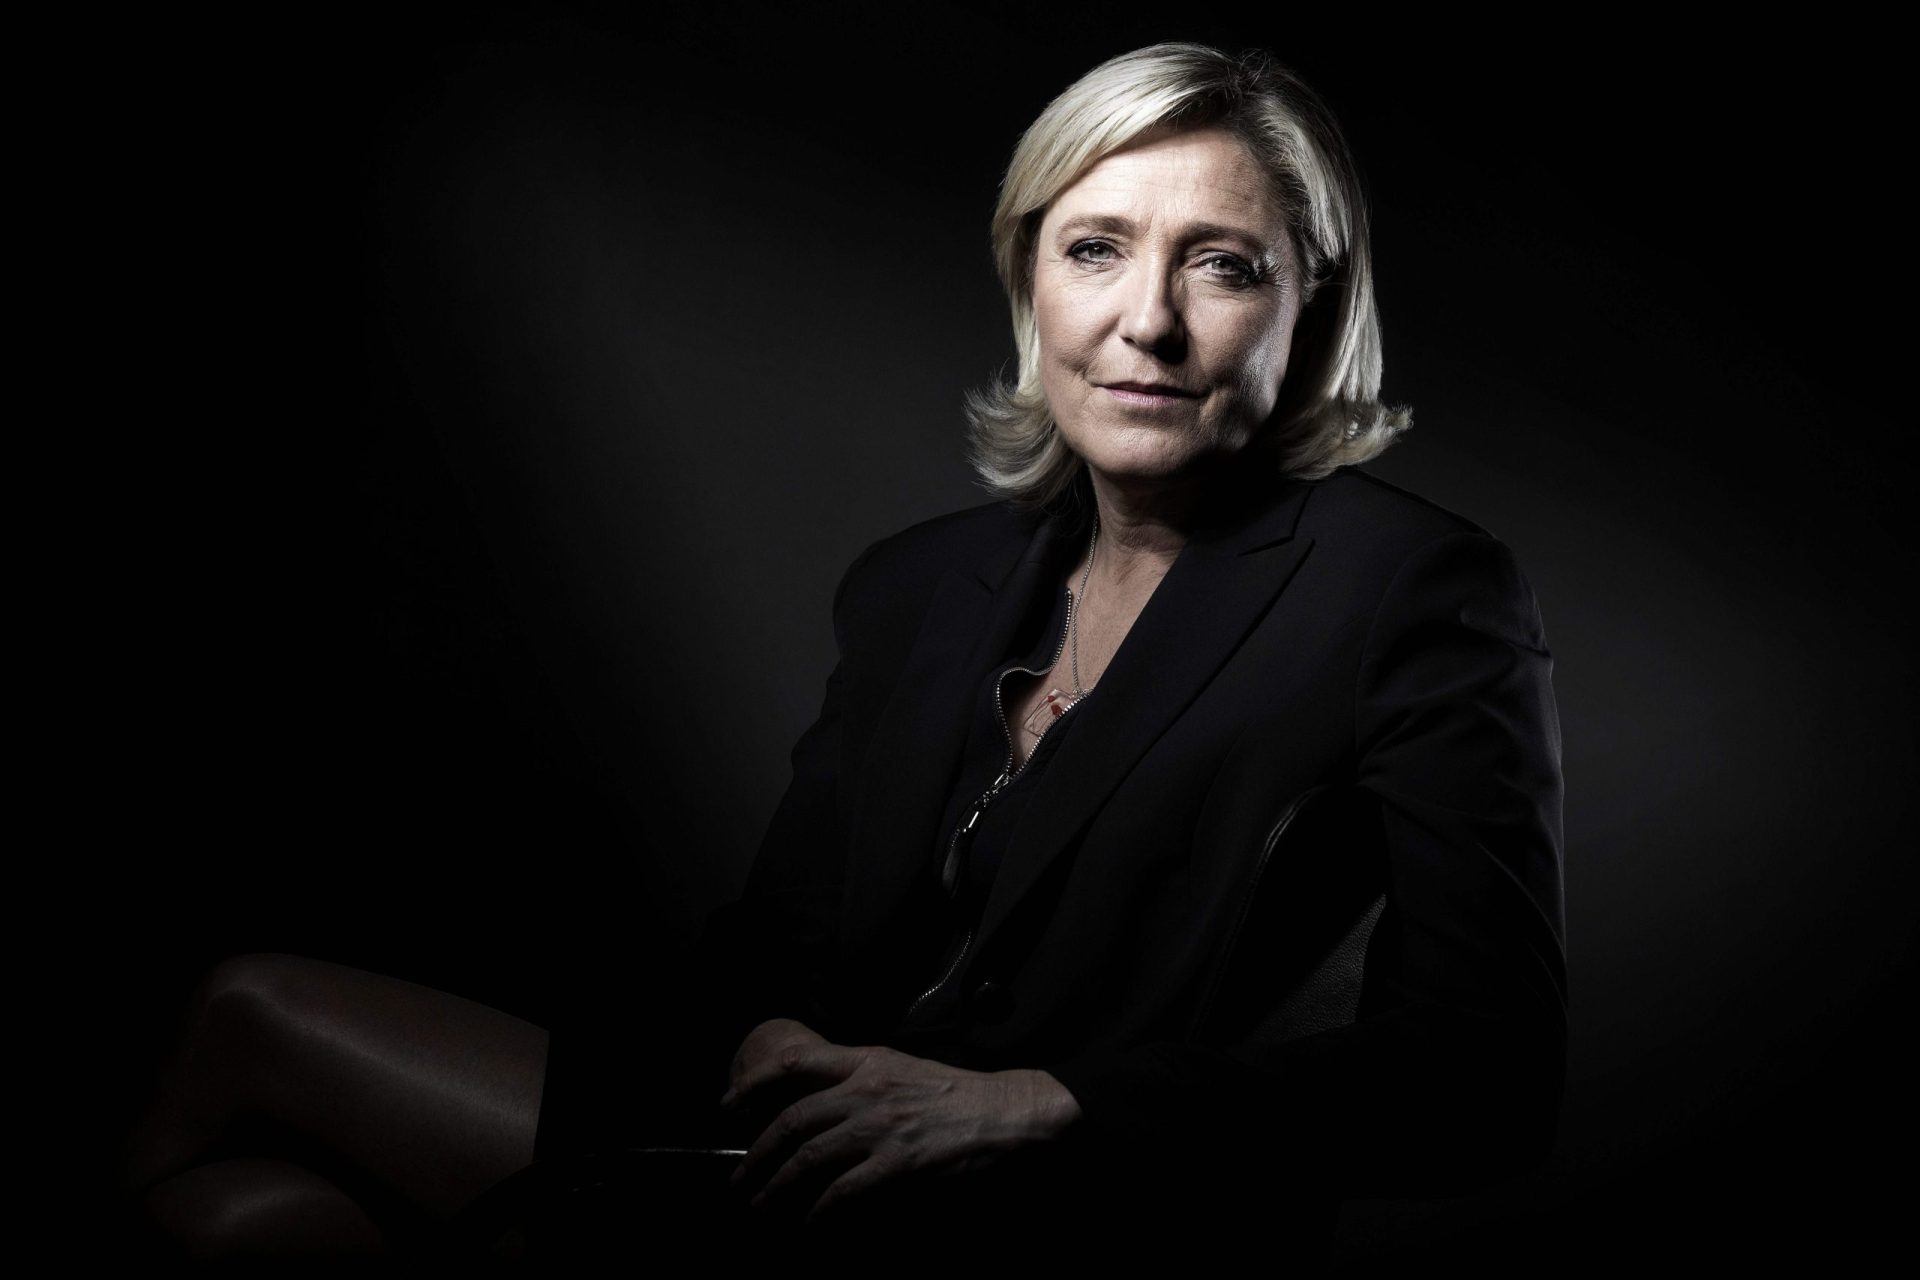 Le Pen acusada de divulgar imagens ligadas ao Estado Islâmico